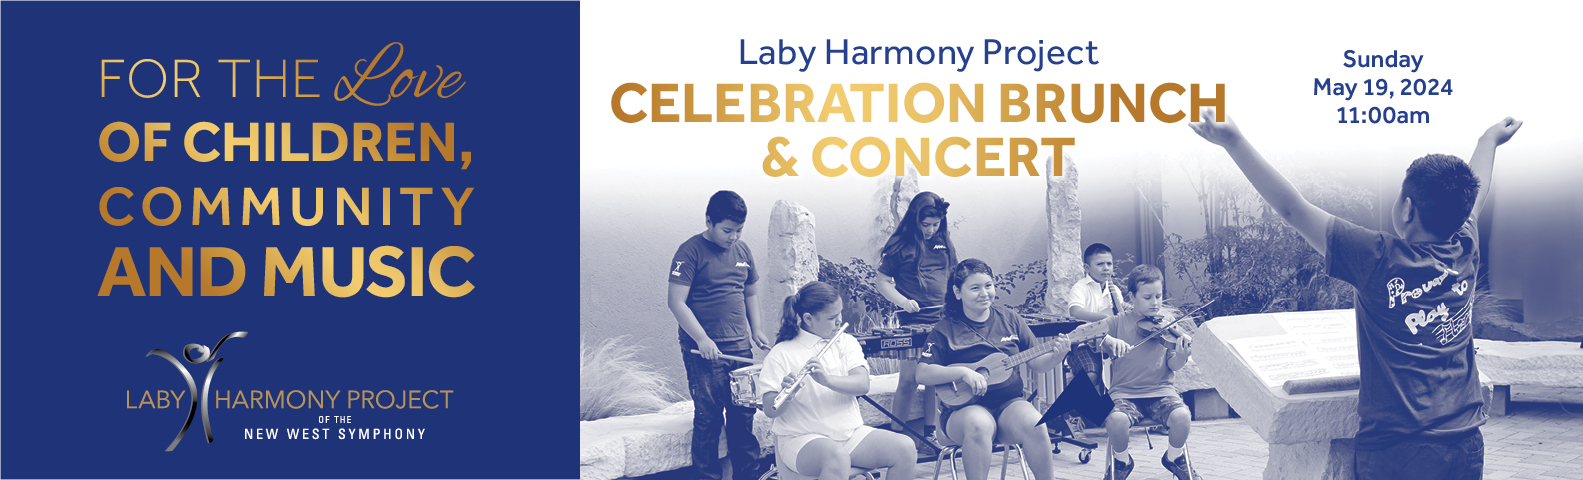 Laby Harmony Project Celebration Brunch & Concert